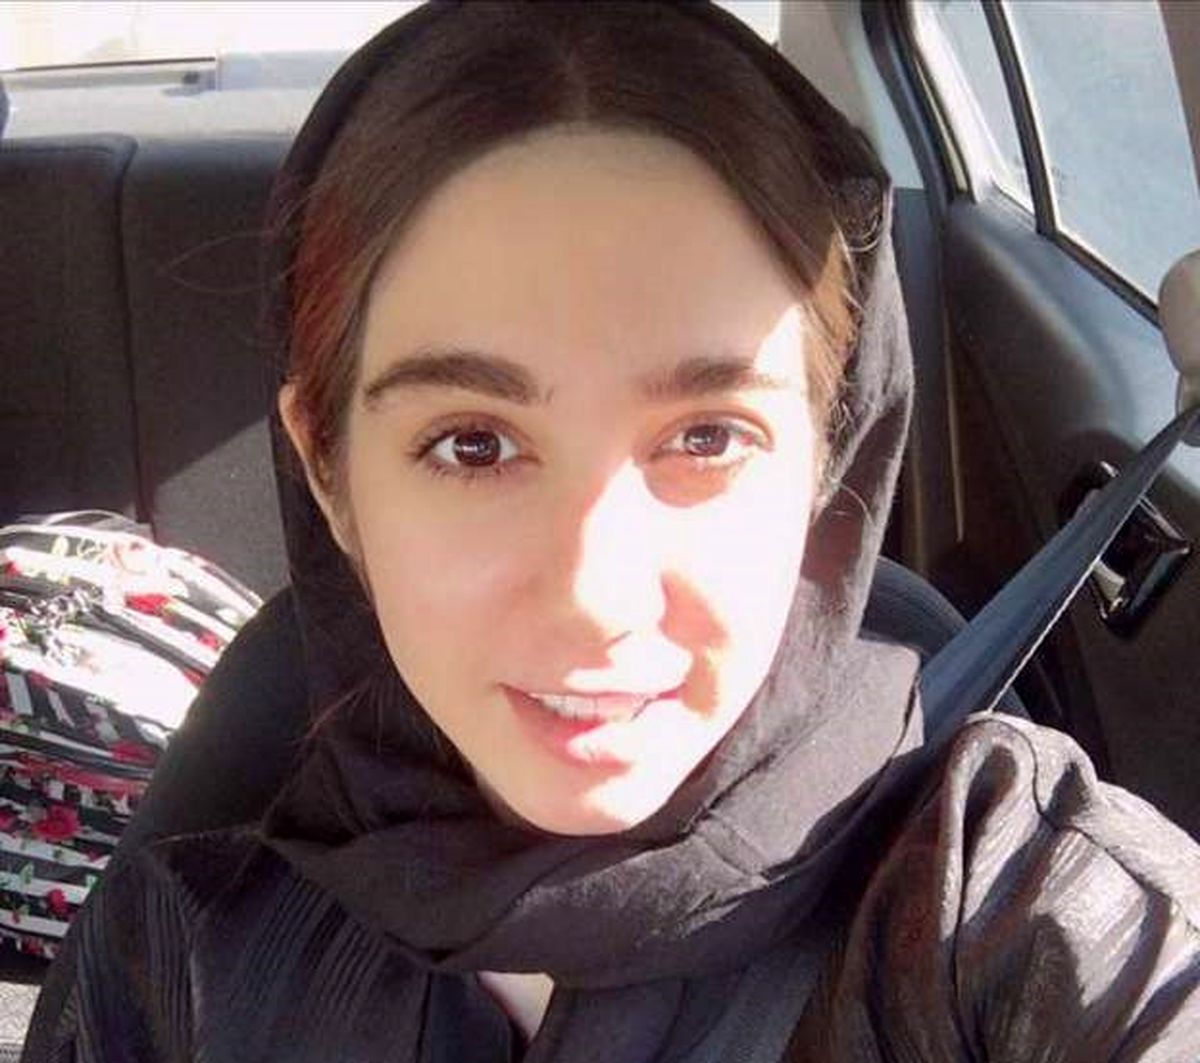 ملیکا هاشمی، خبرنگار بازداشت شد

